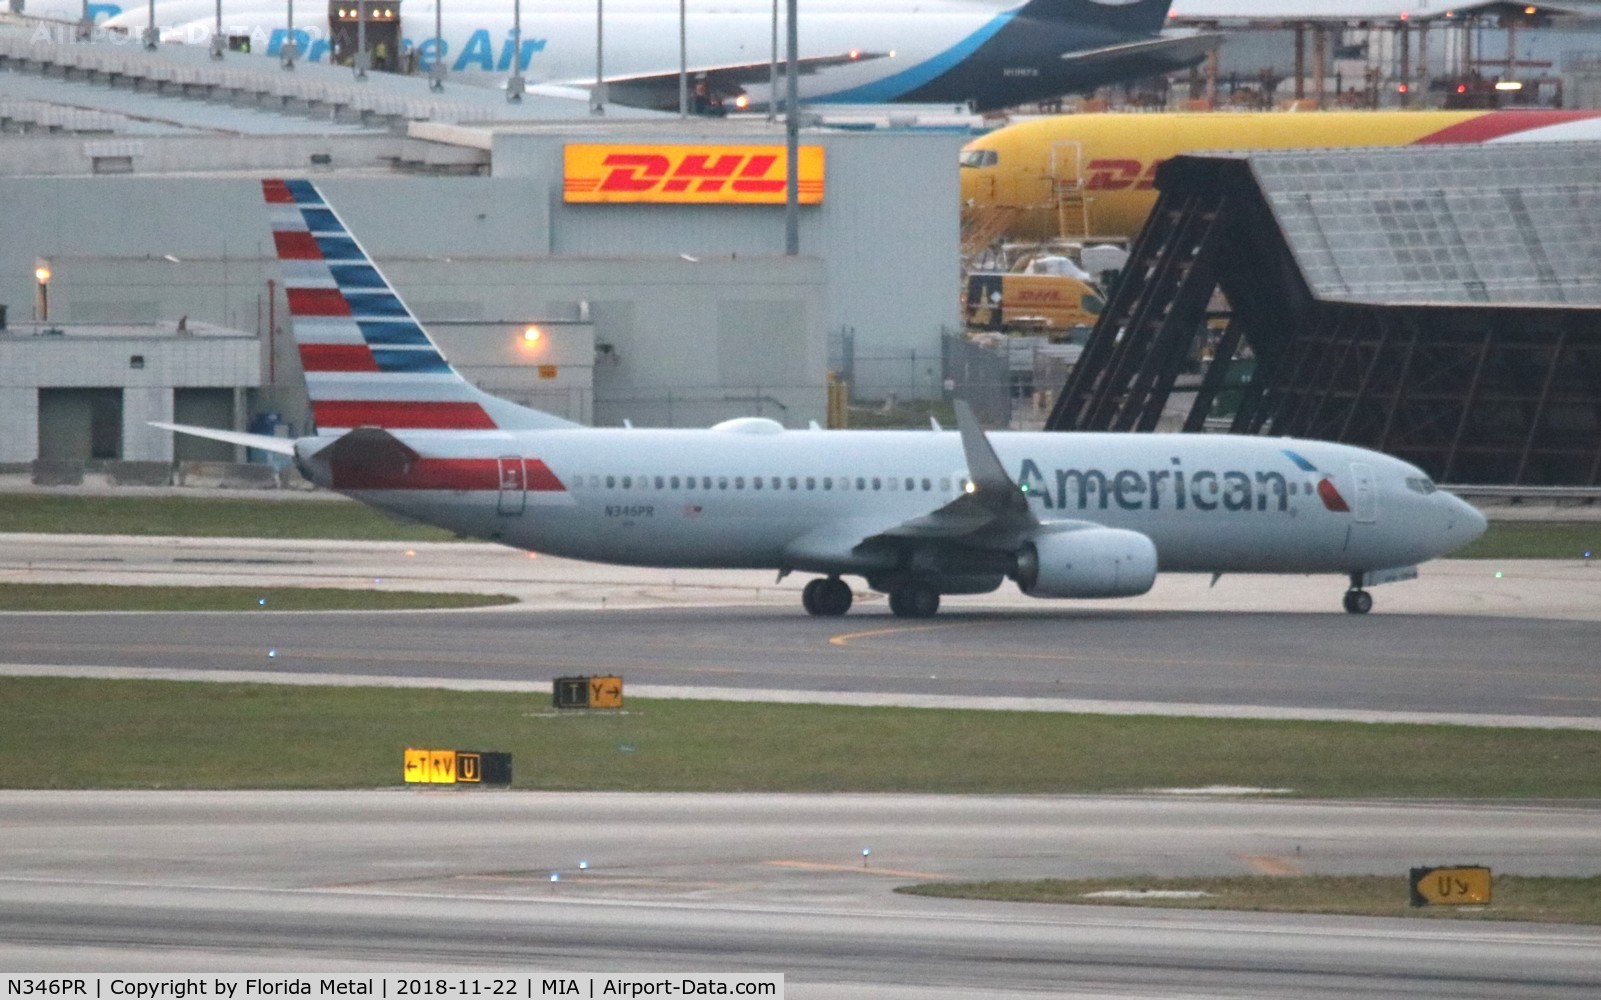 N346PR, 2017 Boeing 737-823 C/N 31273, American